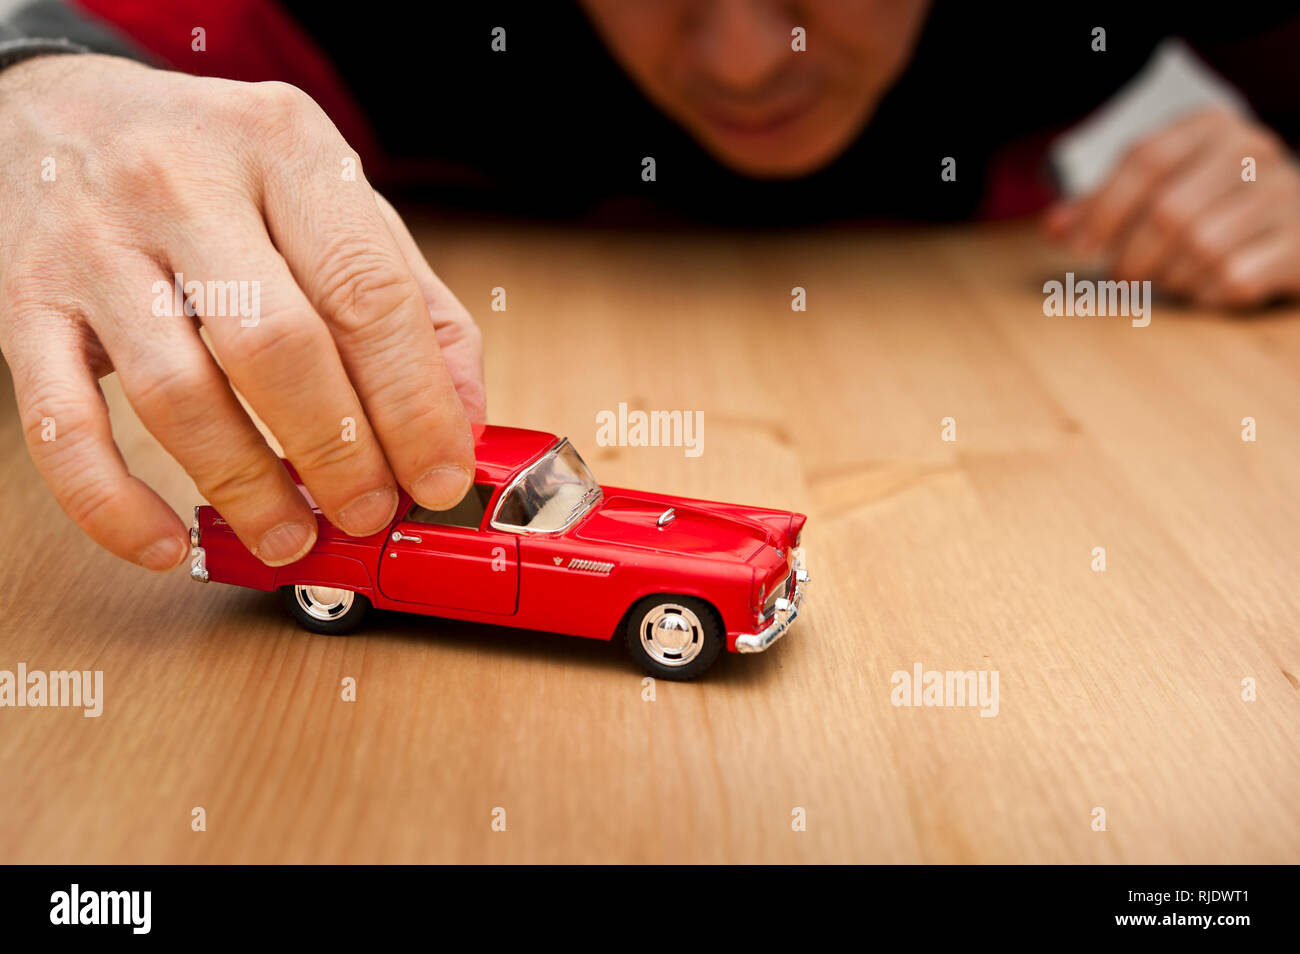 Homme adulte jouant avec un modèle de voiture Ford Thunderbid rouge sur la table Banque D'Images